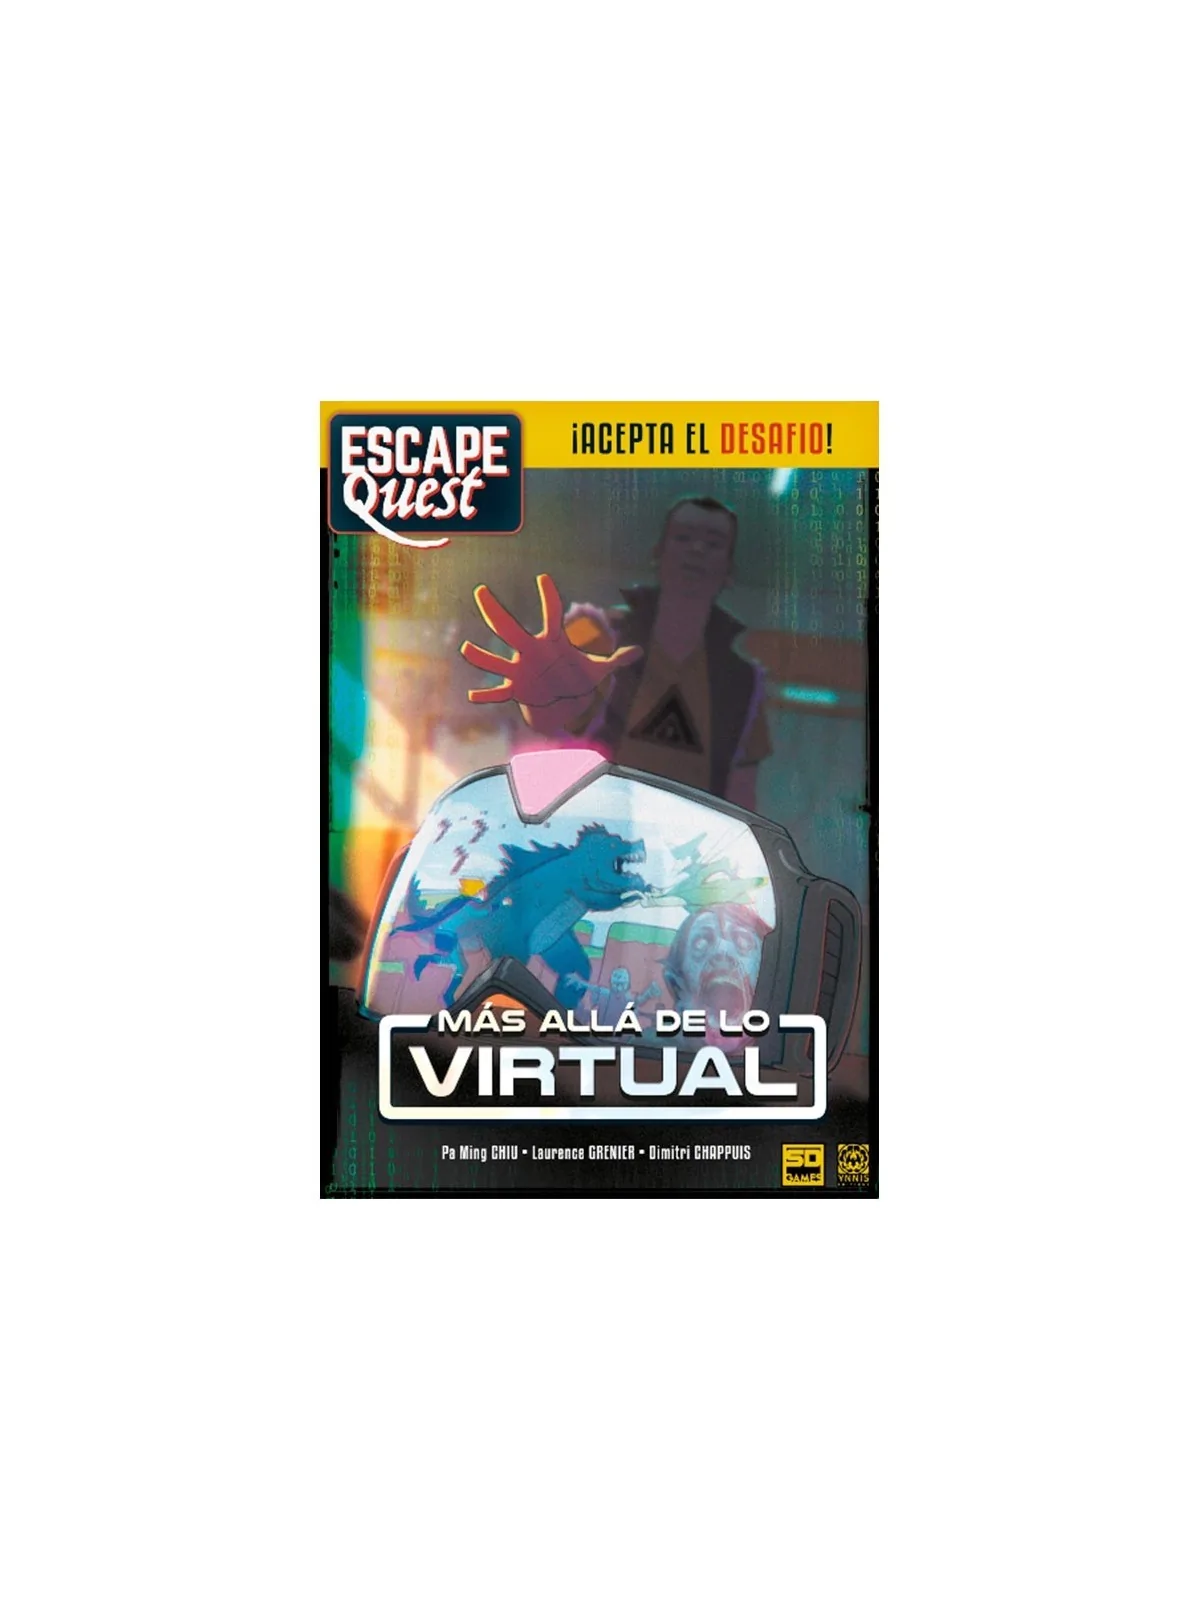 Comprar Escape Quest - Más Allá de lo Virtual barato al mejor precio 1